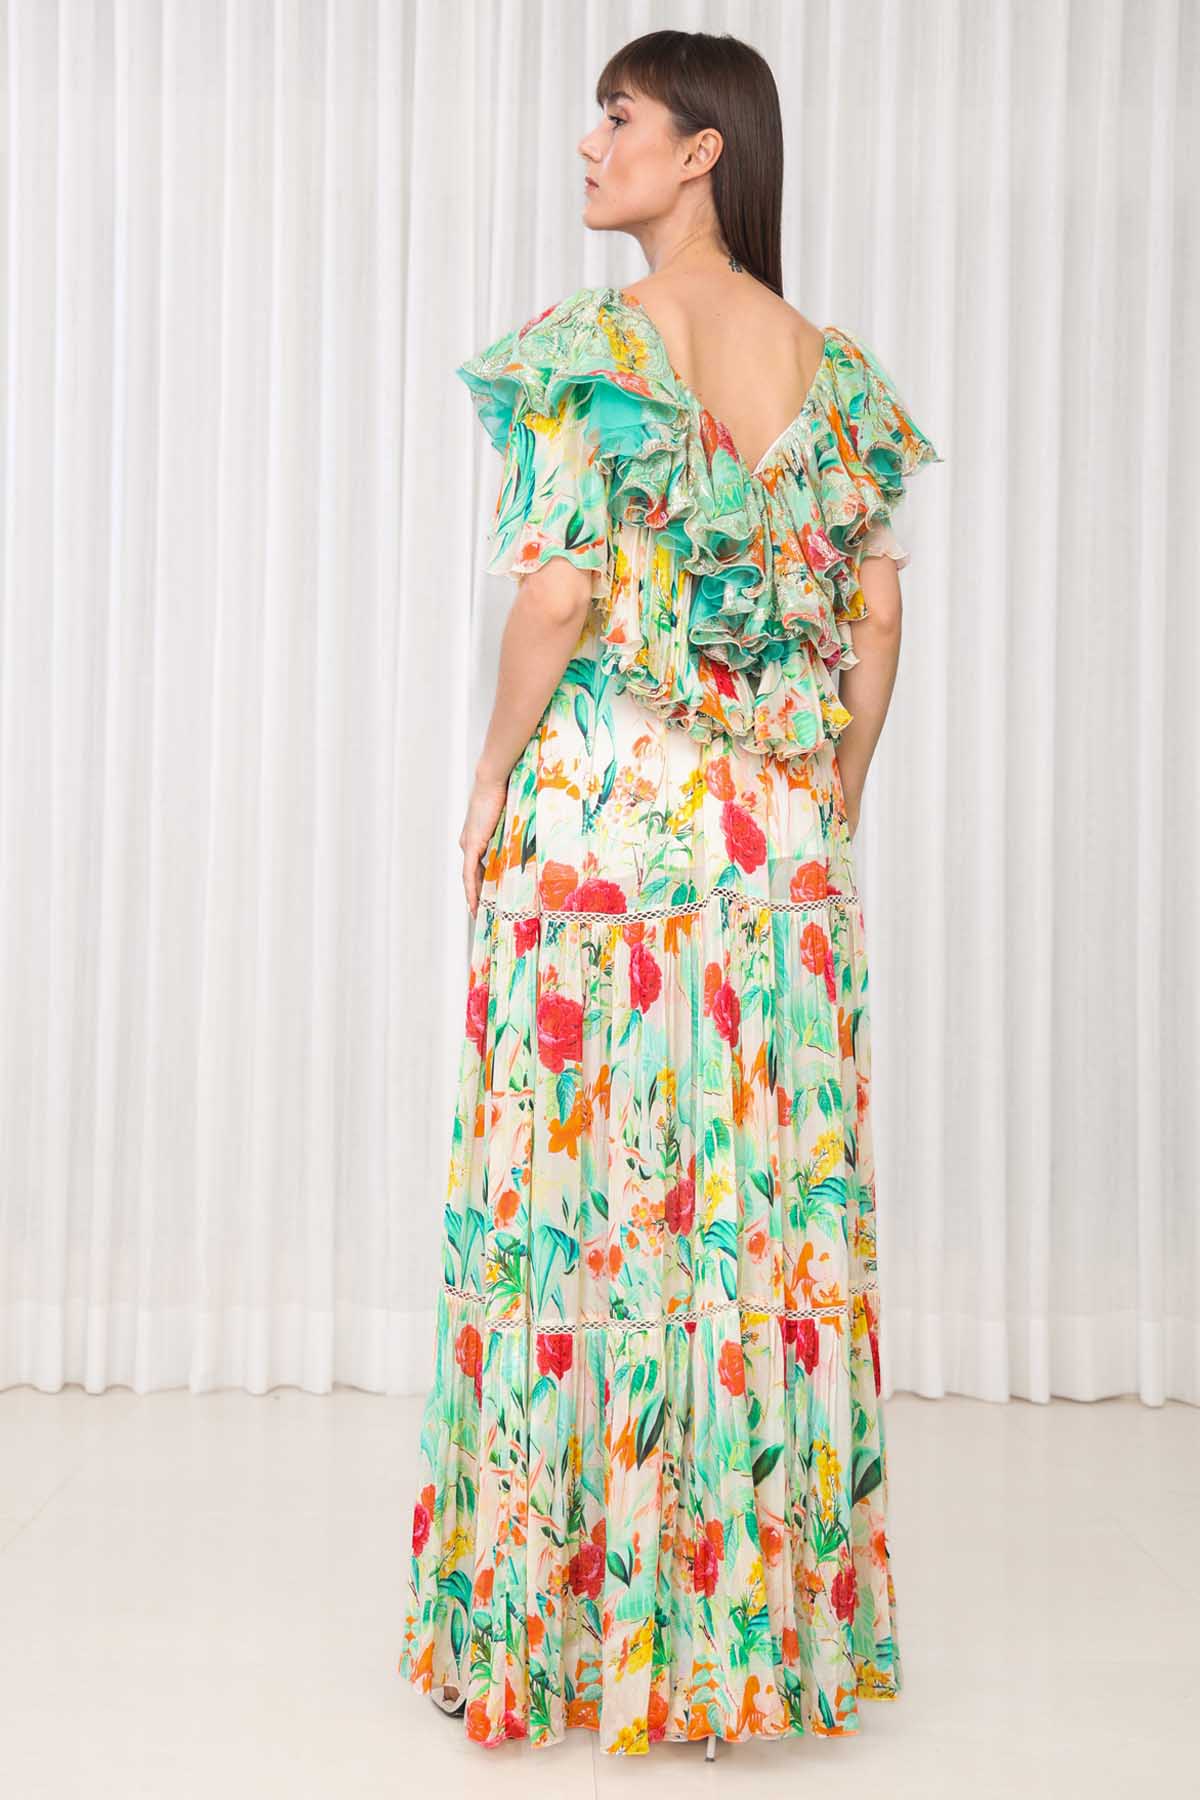 Dahlia Bouquet Printed Dress